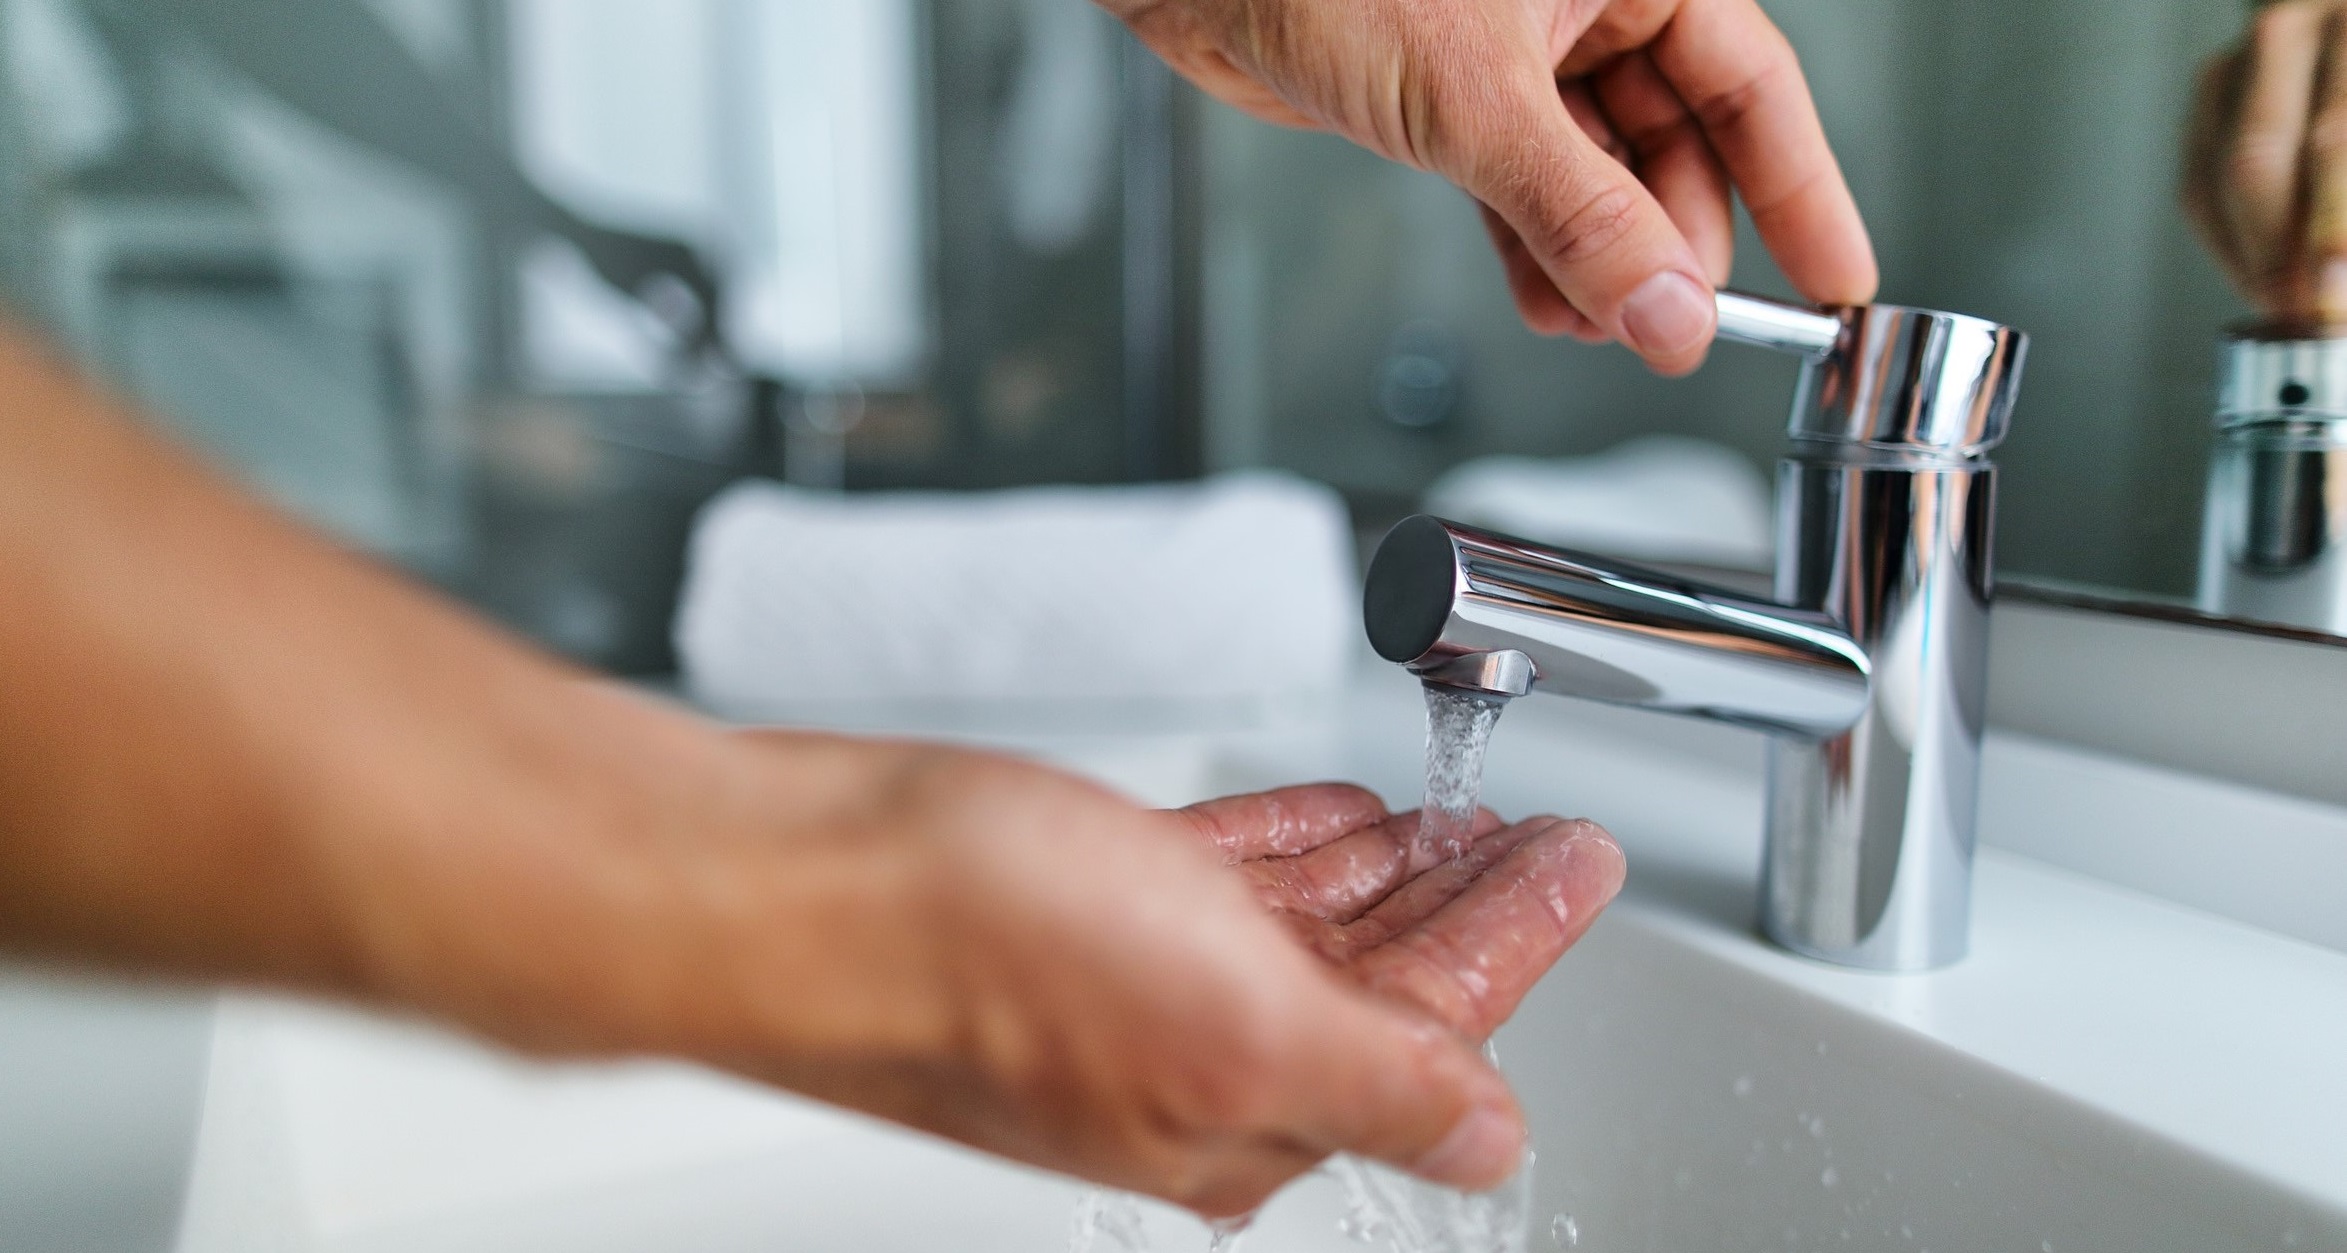 Окр моет руки. Кран вода руки. Открытый кран с водой. Мытье рук. Мытье рук под краном.